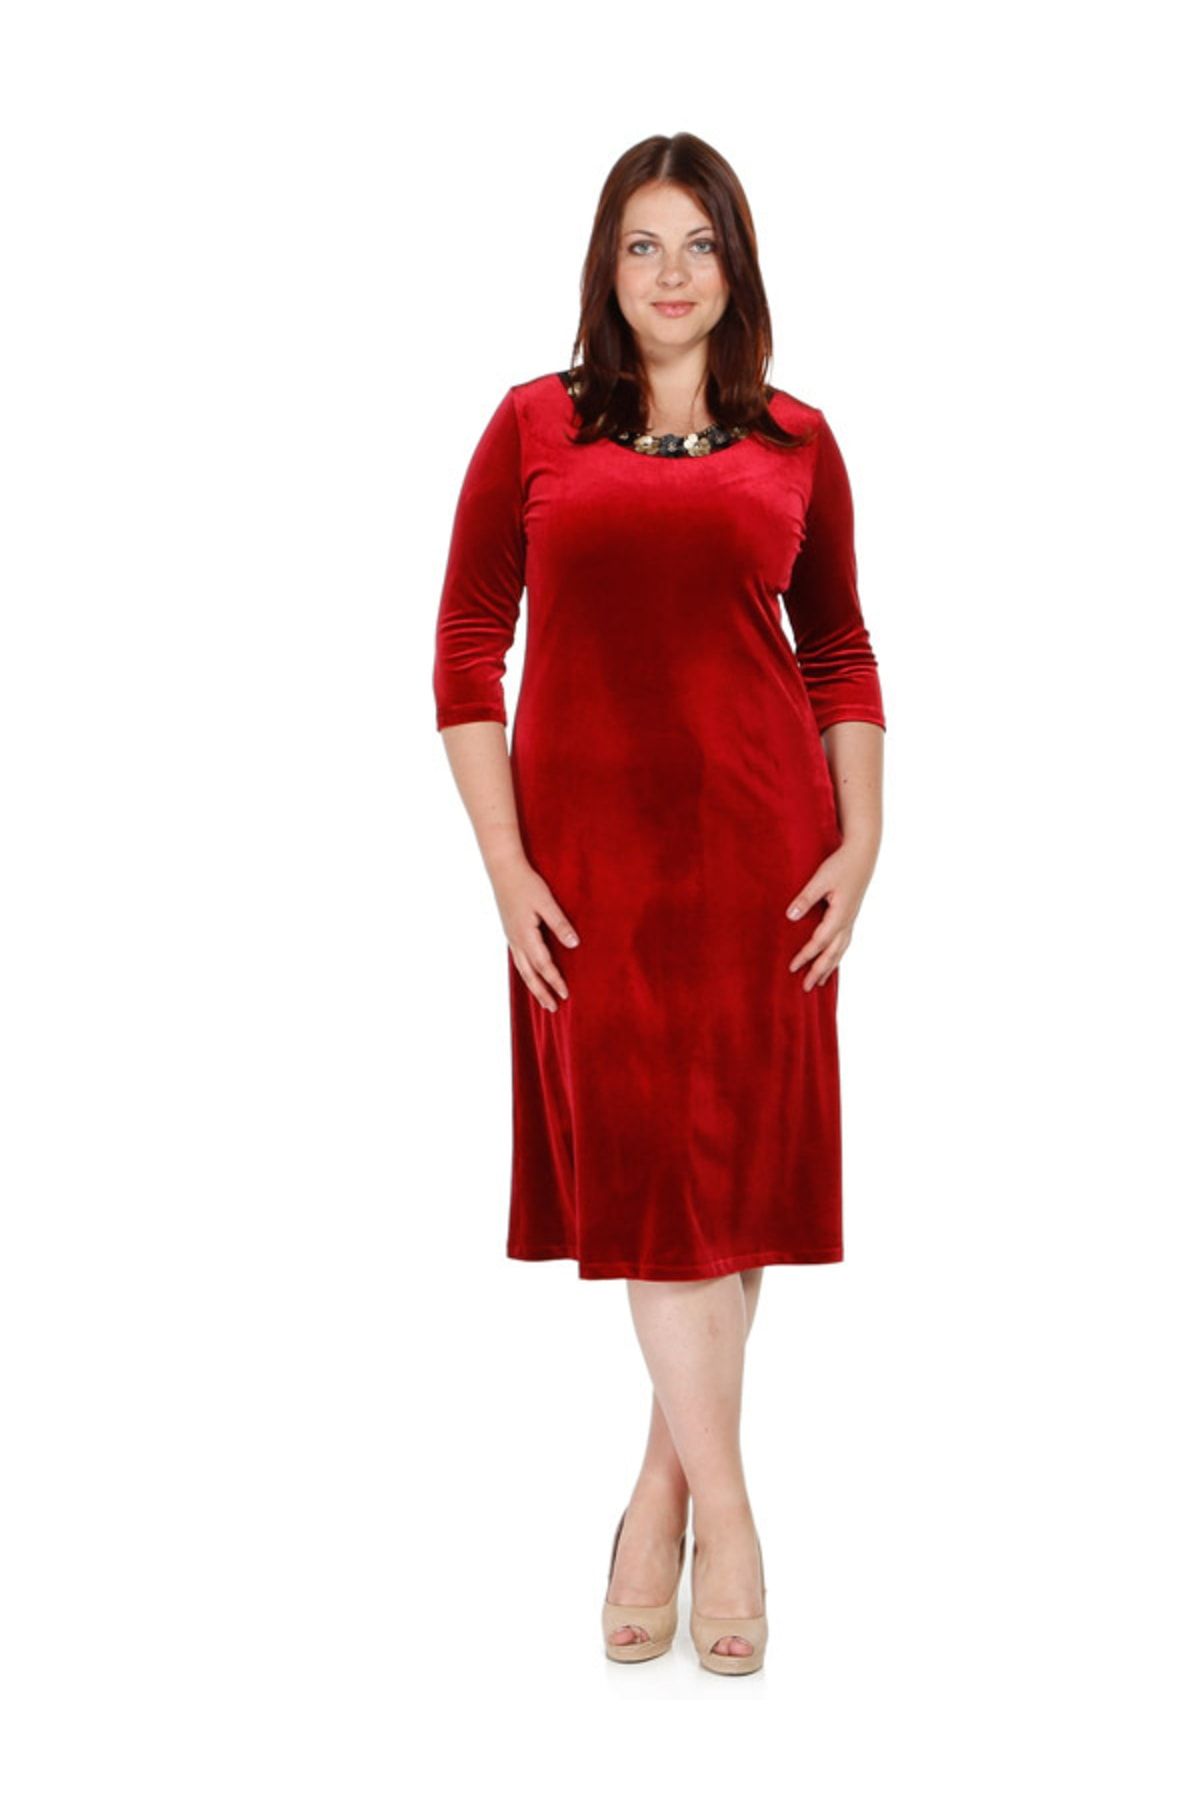 Nidya Moda Kadın Kırmızı Bahar Yaka Kadife Abiye Elbise 4076AK